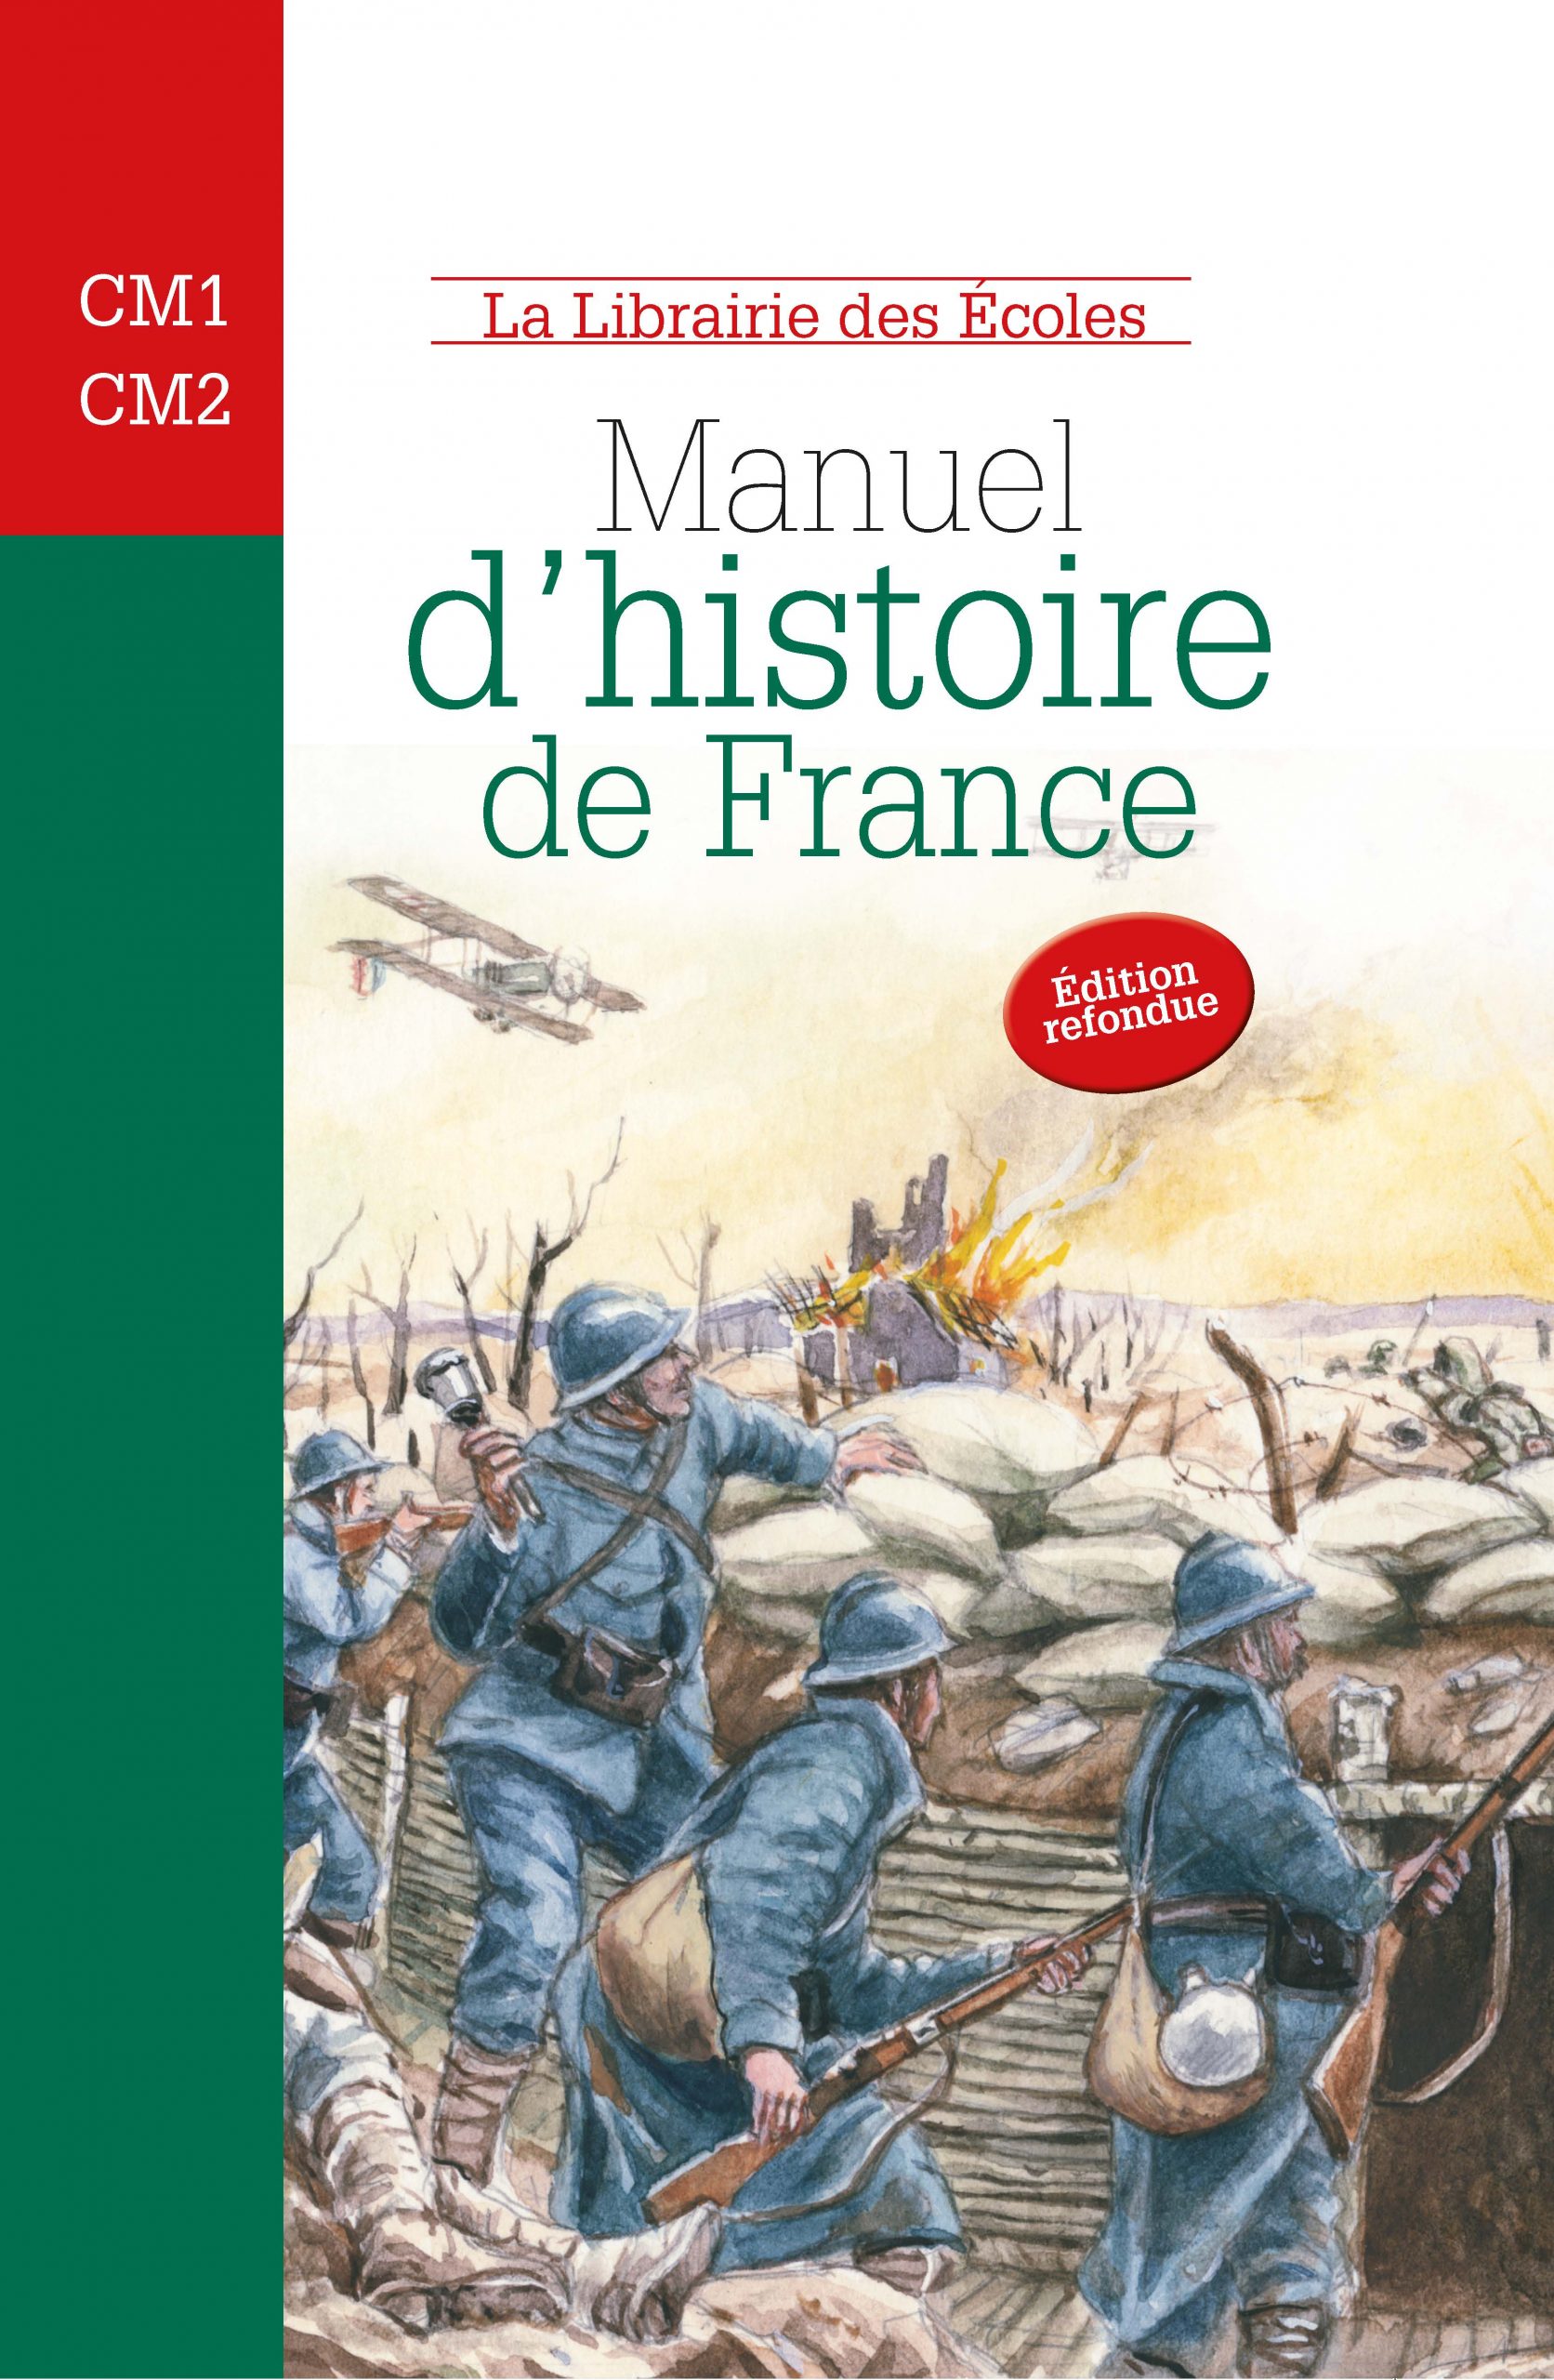 Livre Histoire Cm1 En Ligne Gratuit Manuel d'histoire de France - CM1-CM2 - La Librairie des Ecoles